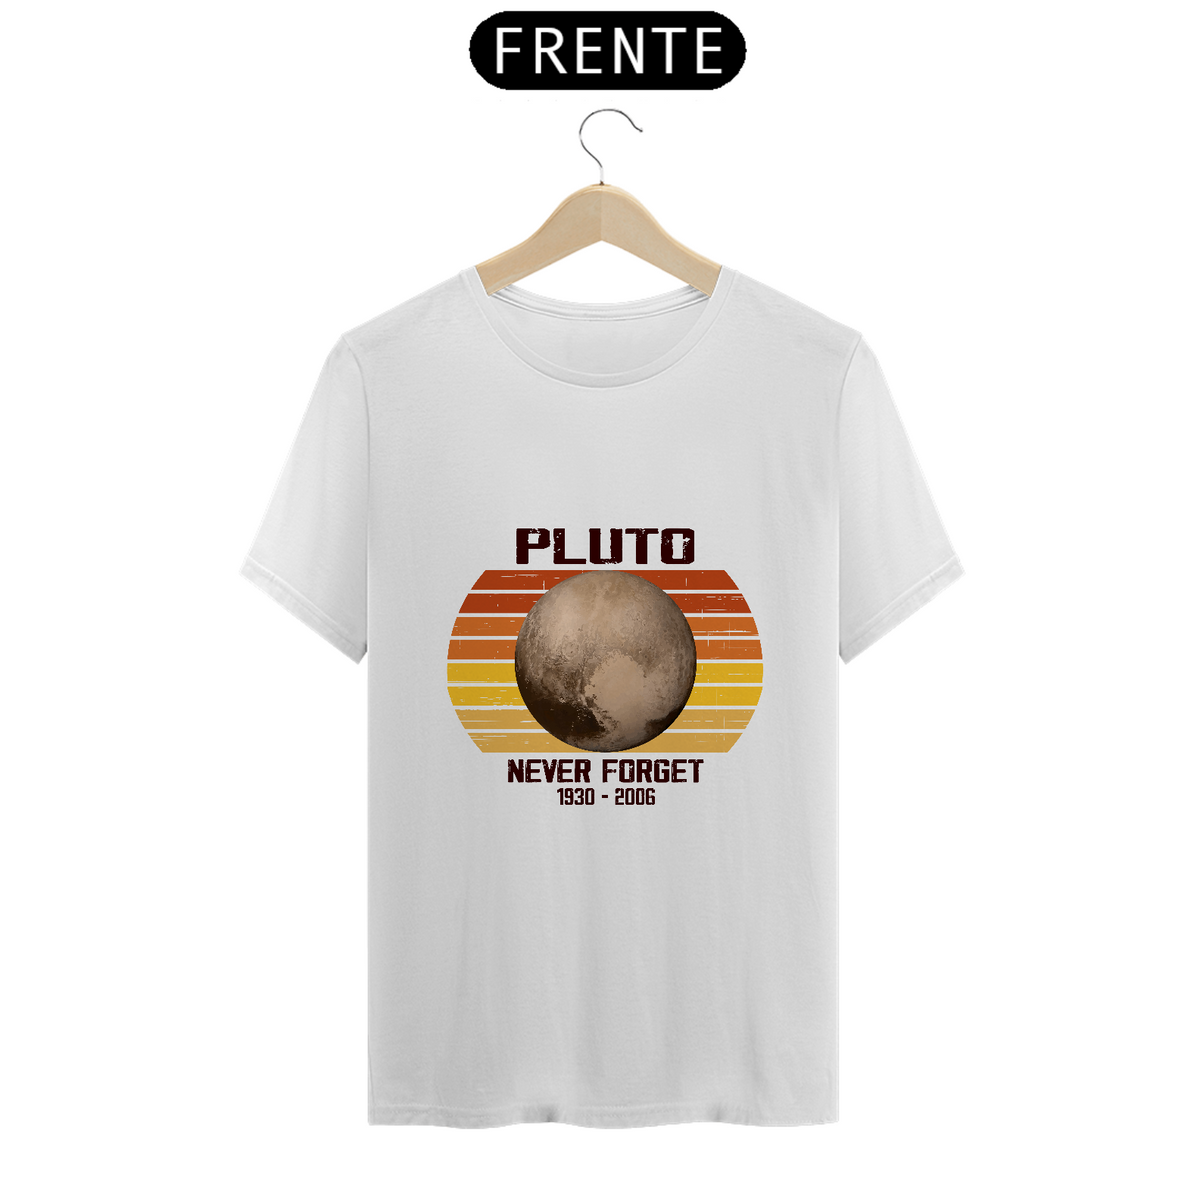 Nome do produto: Camiseta Pluto - Never Forget